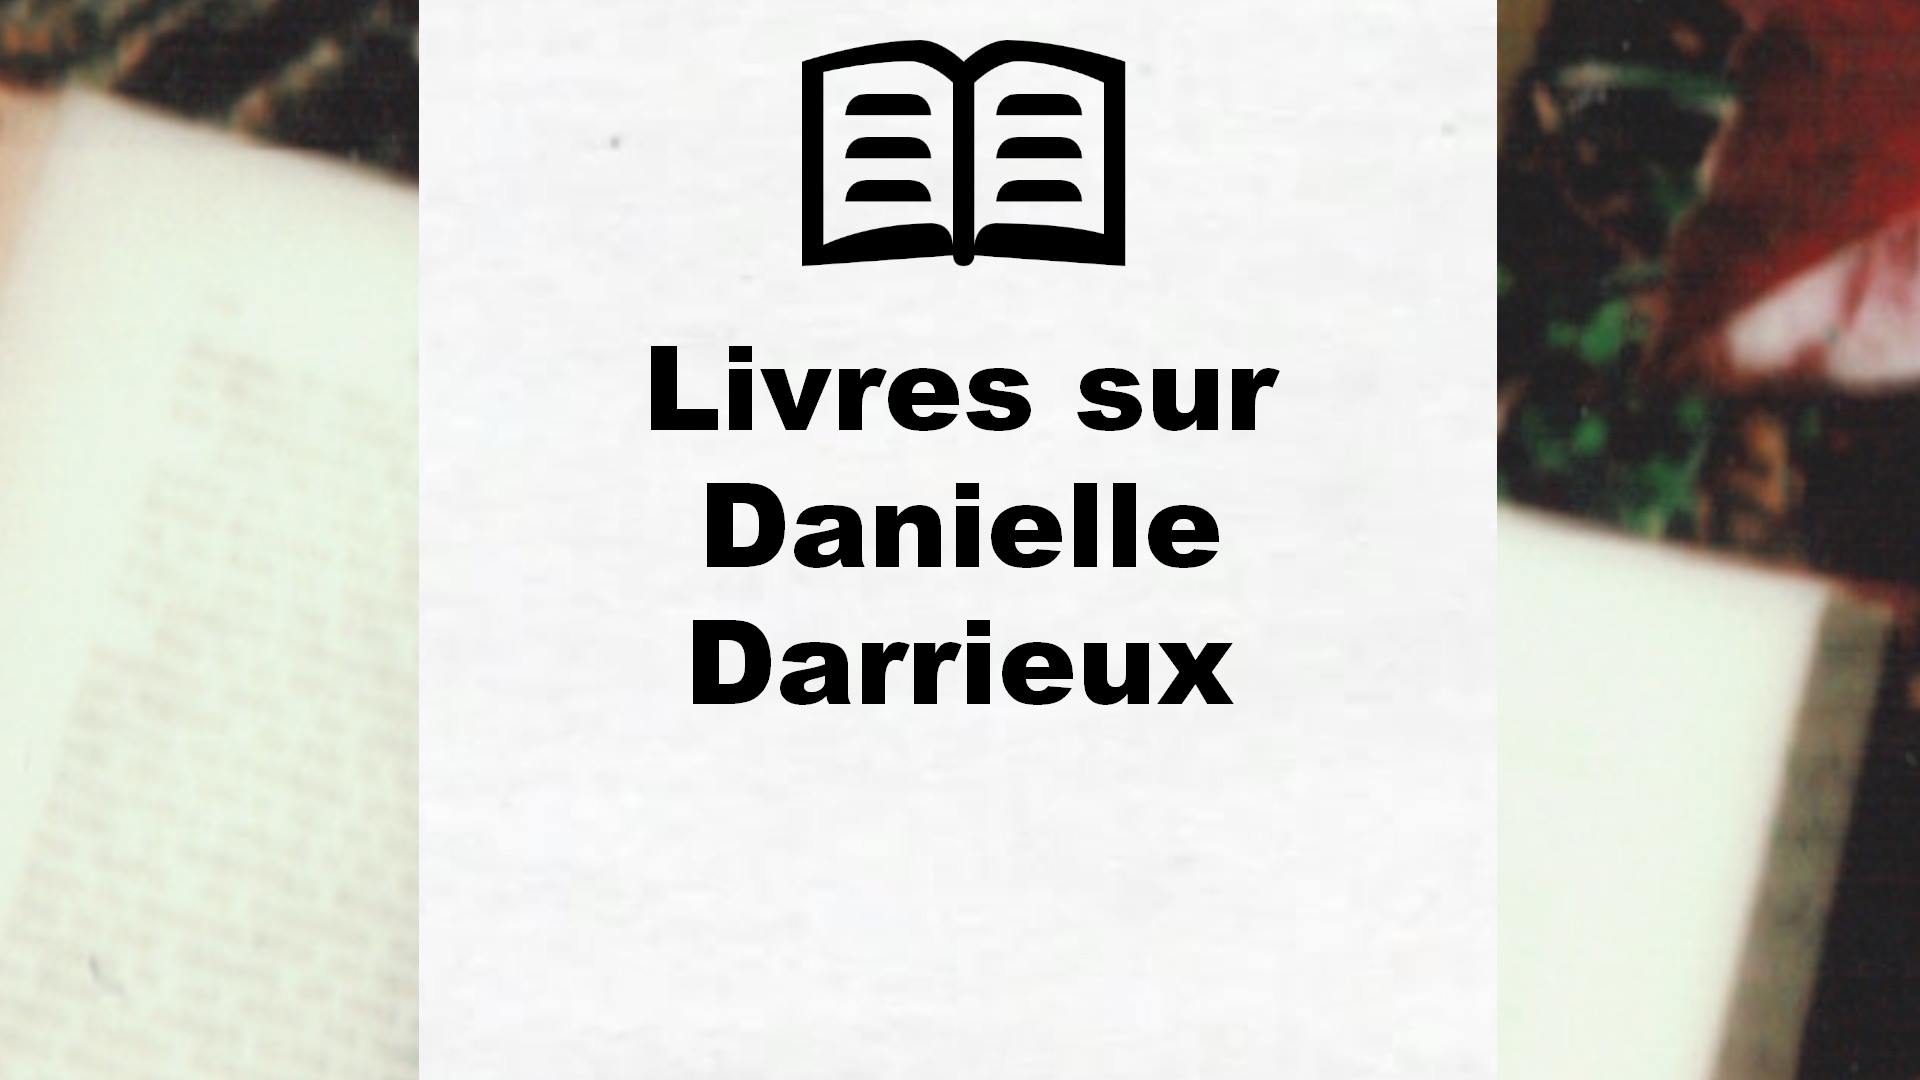 Livres sur Danielle Darrieux